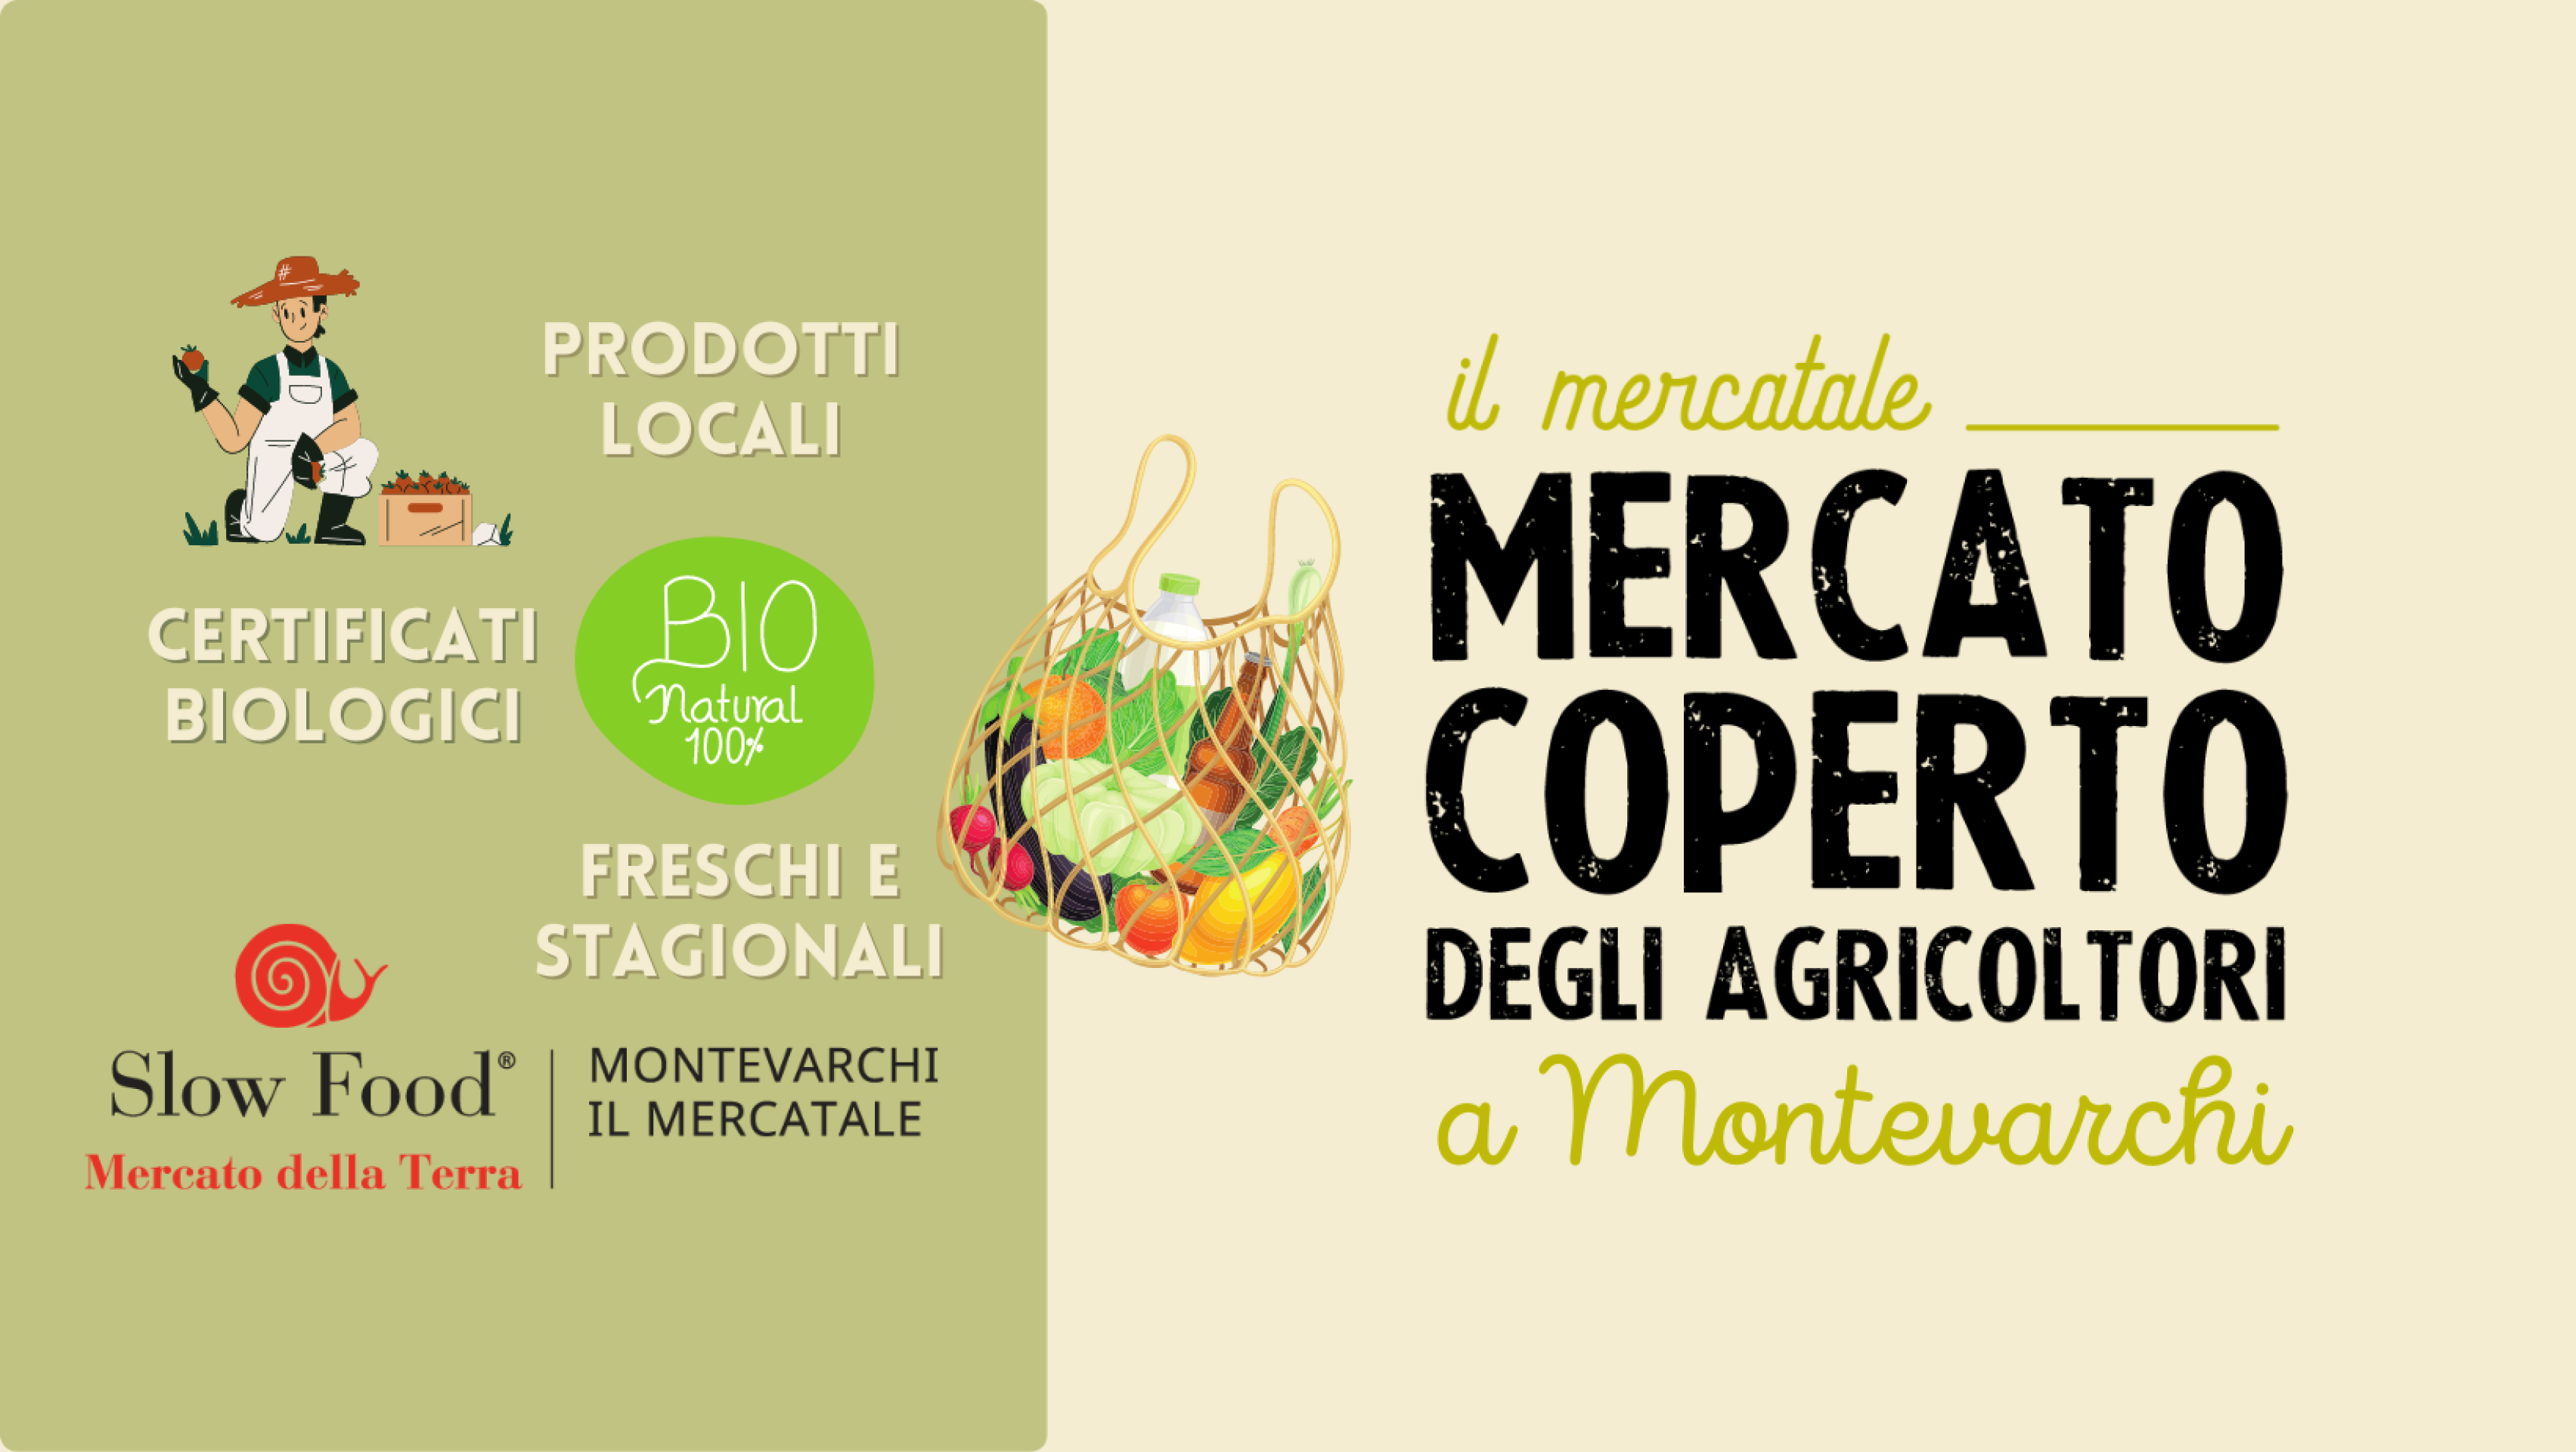 IL MERCATALE - Il Mercato Coperto degli Agricoltori